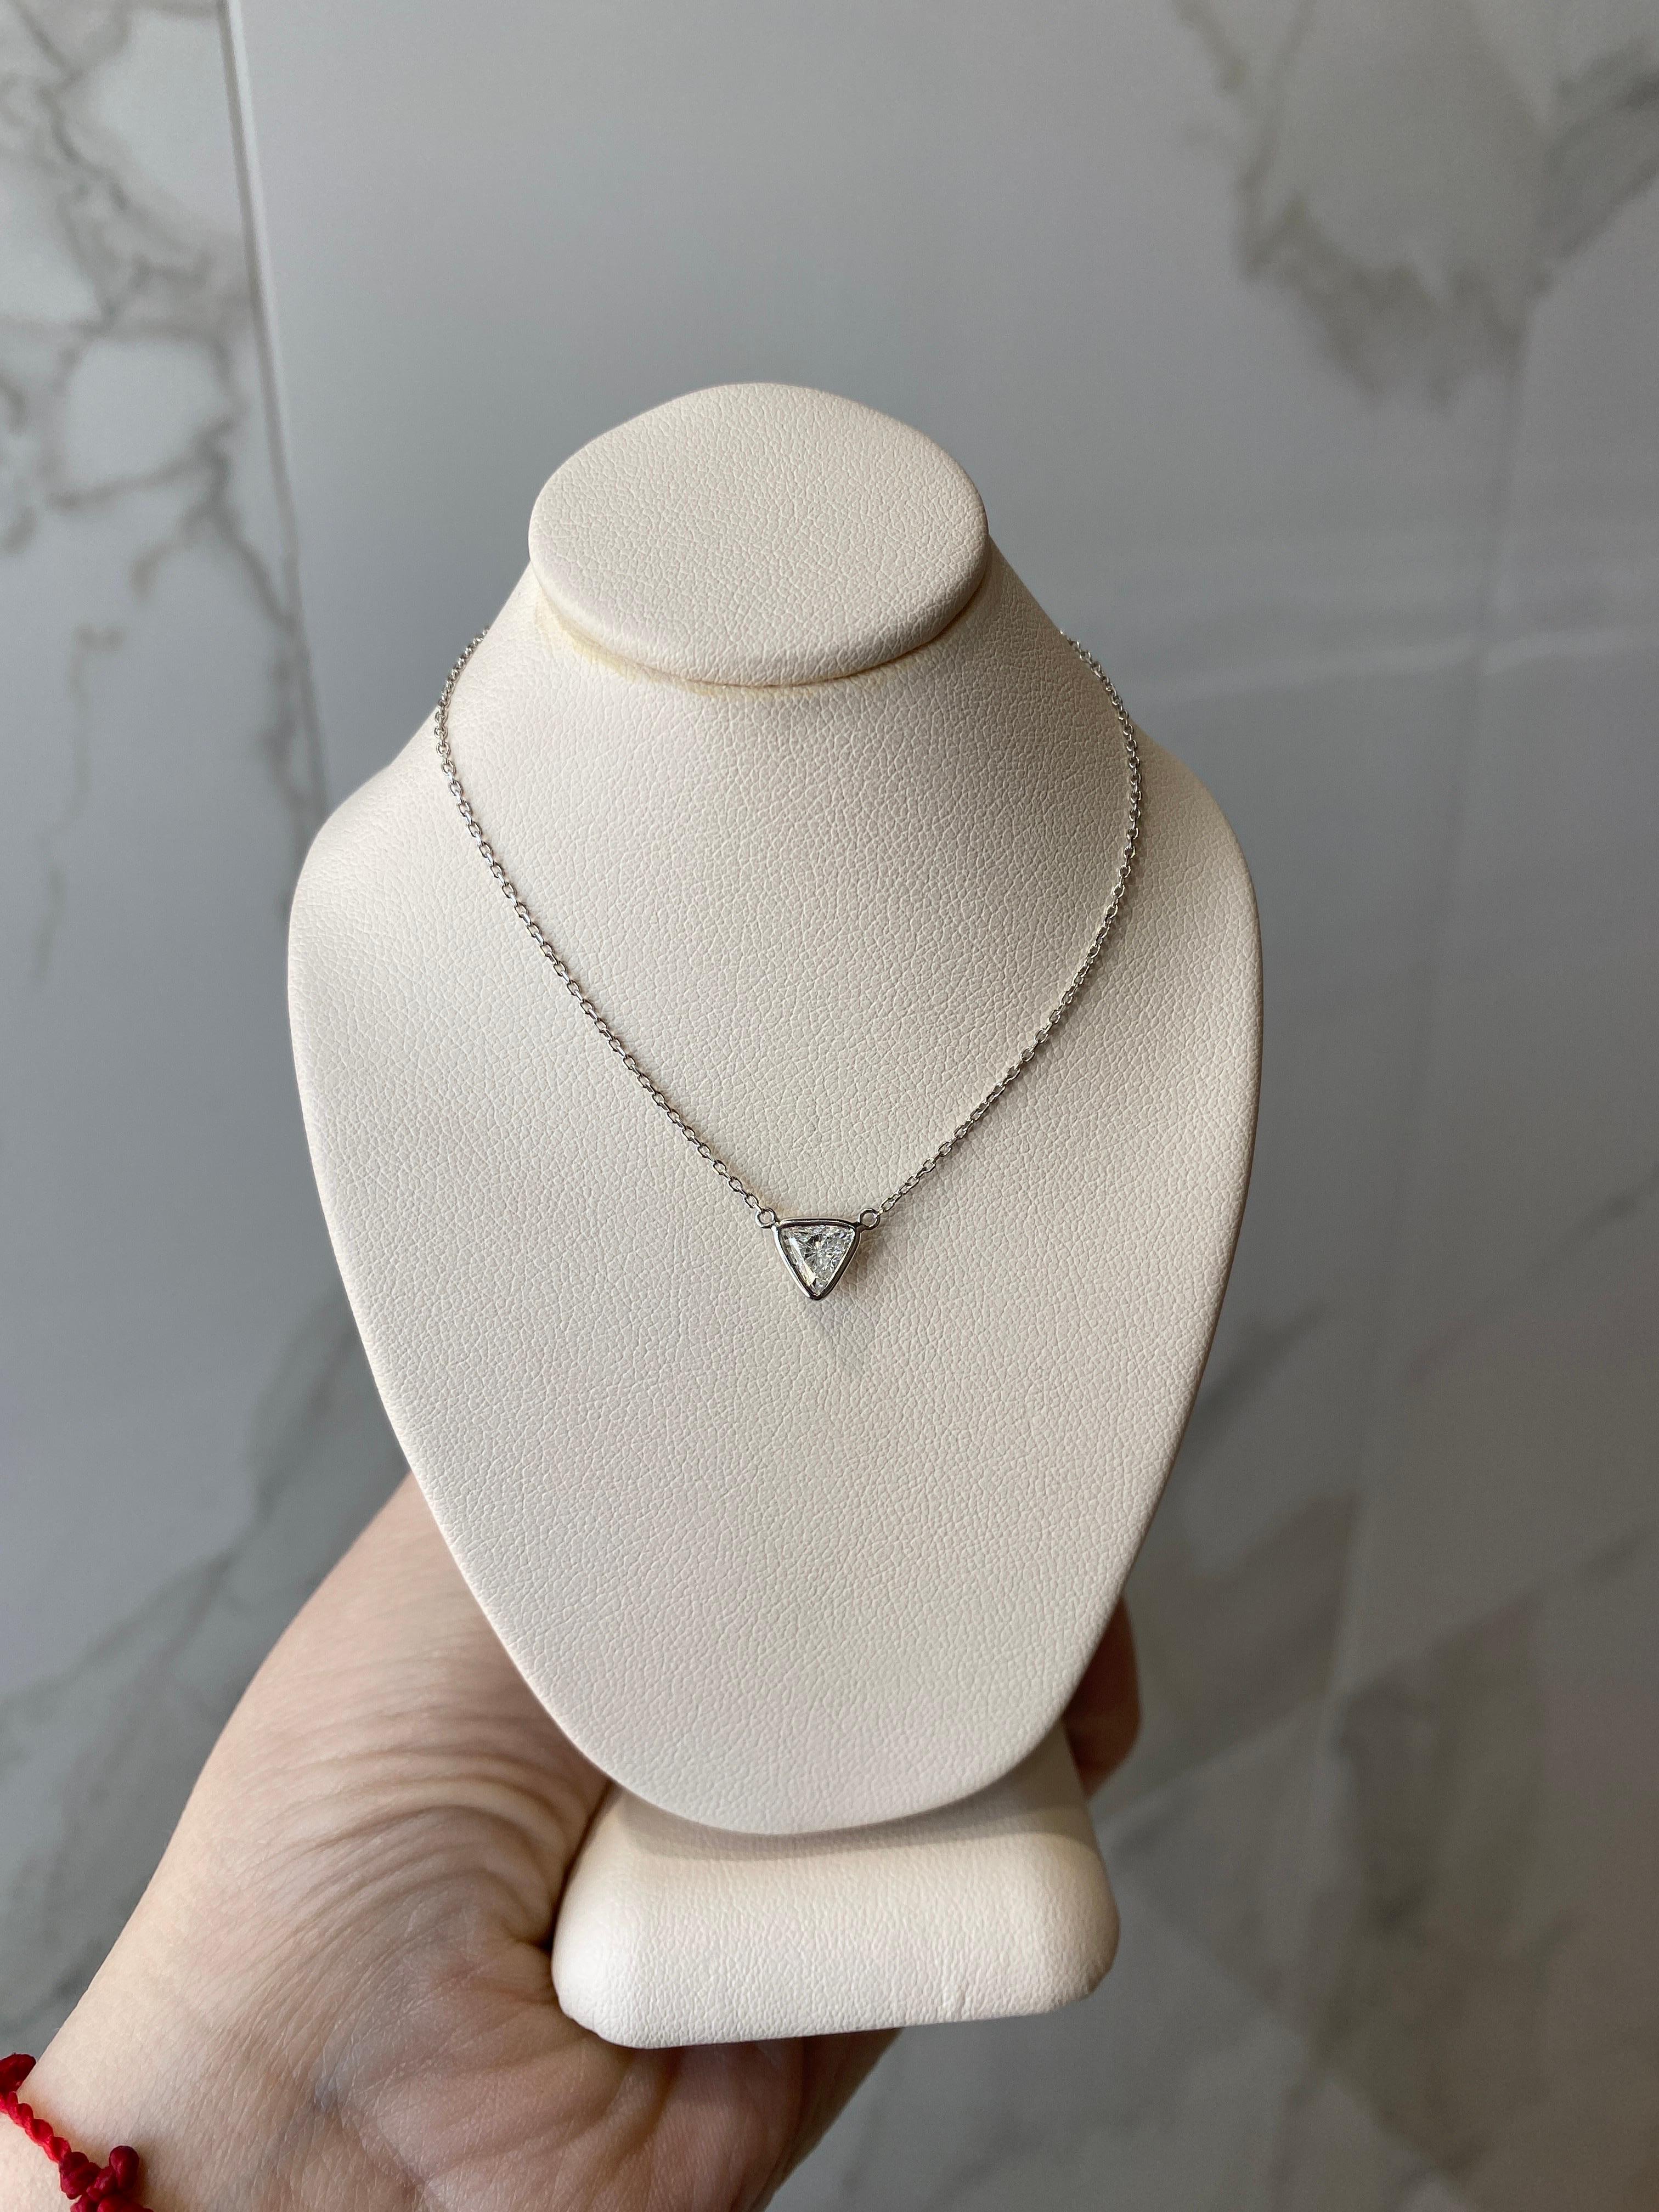 0.46 Carat Natural Trillion Cut Diamond Pendant Necklace, 14k White Gold For Sale 6